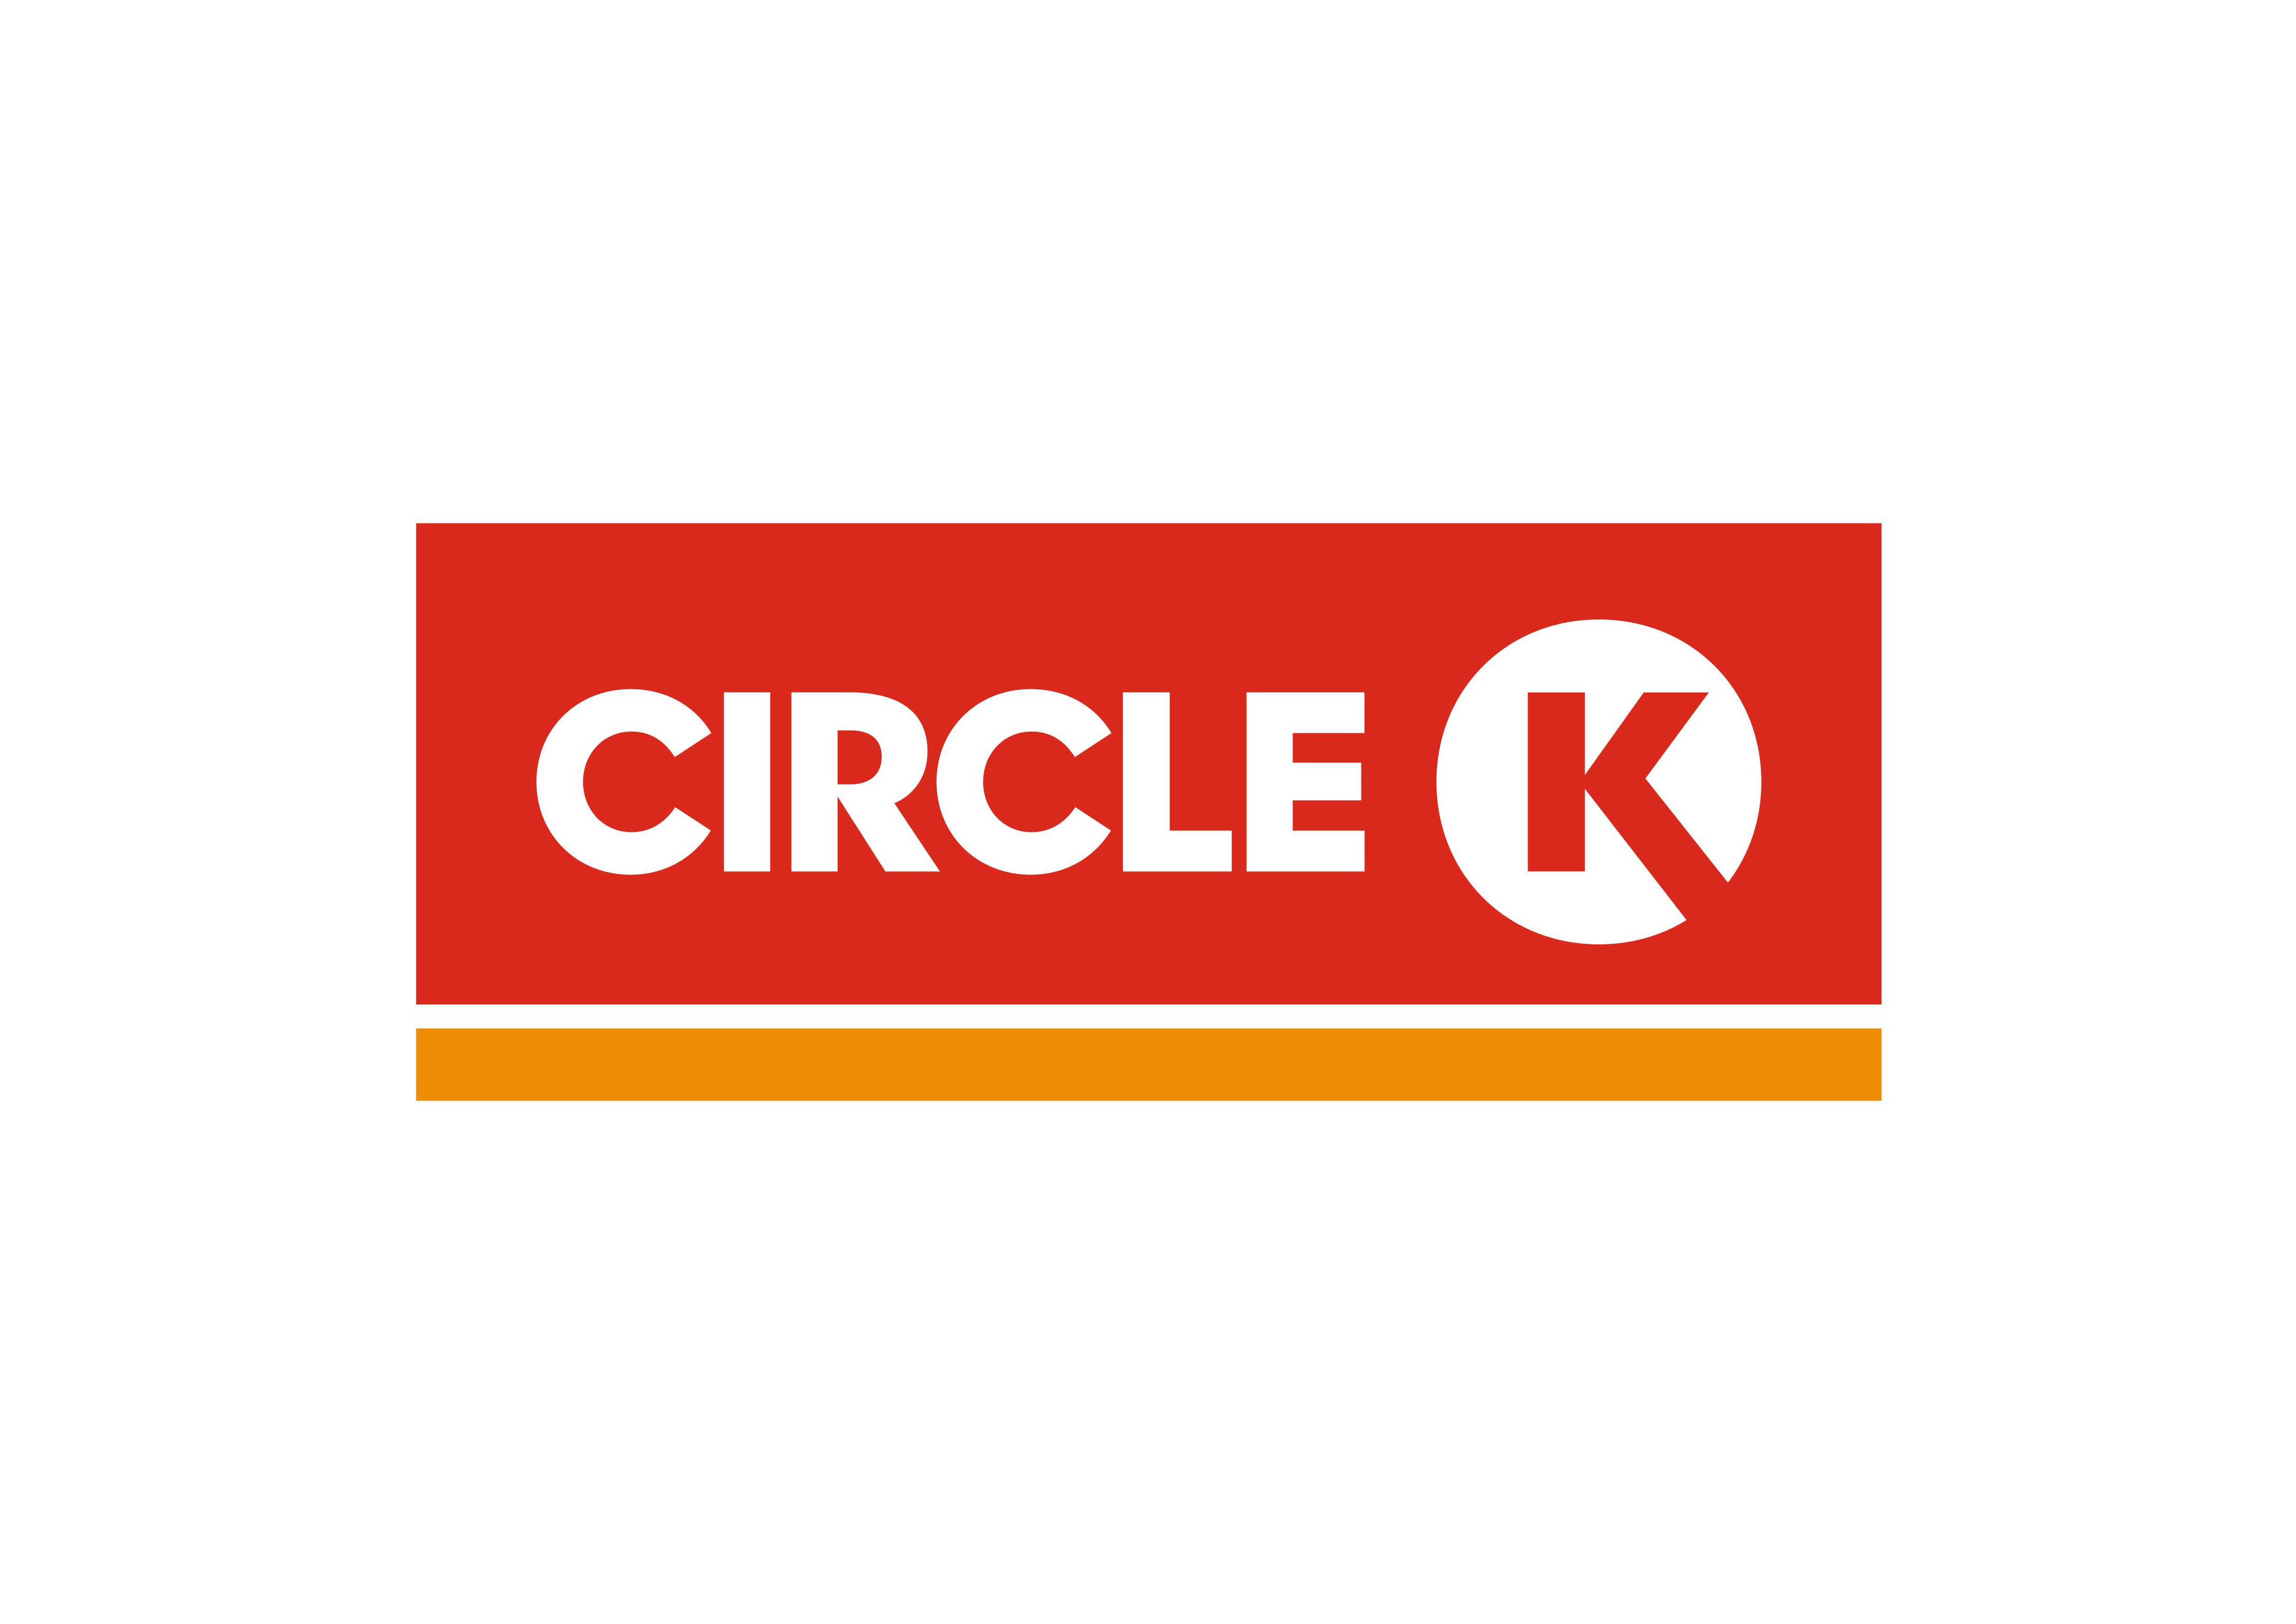 CIRCLE K